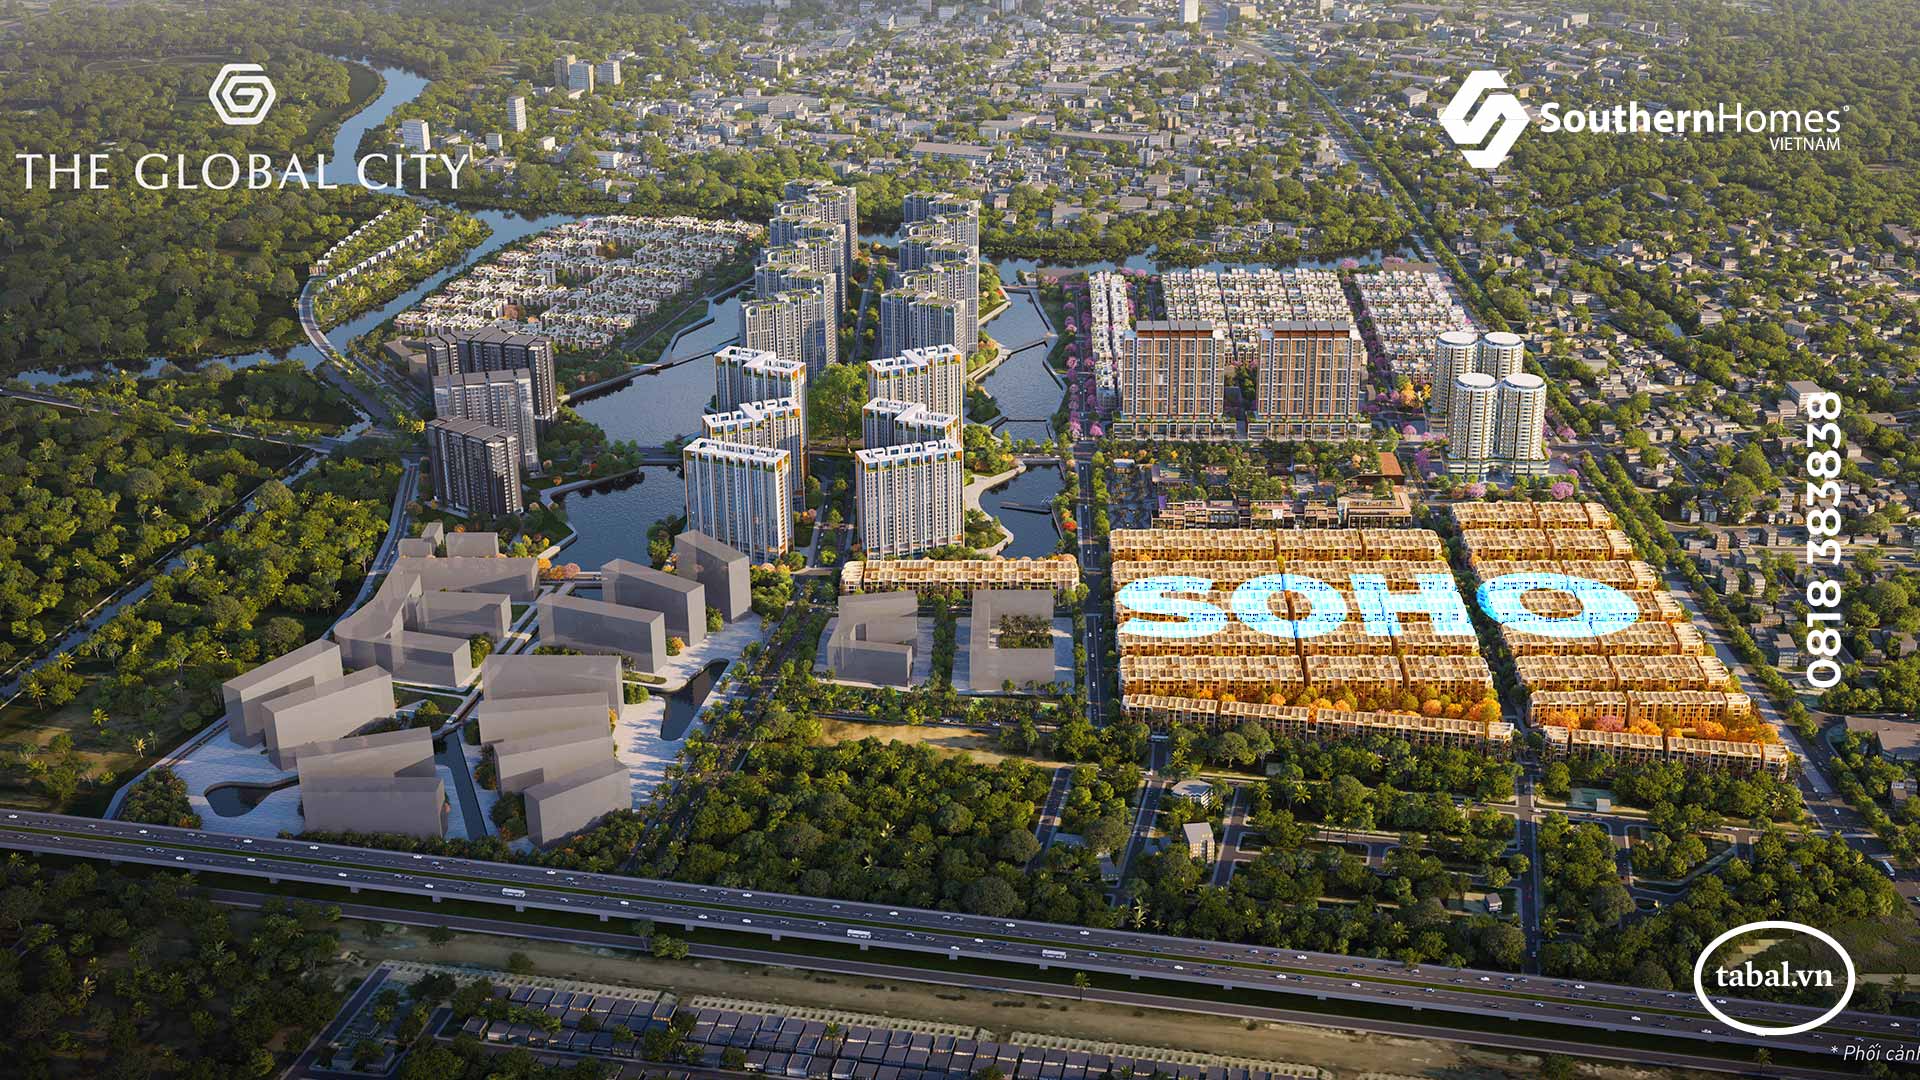 Dự án The Global City - Chủ đầu tư Masterise Homes - Đang mở bán phân khu nhà phố SOHO - Đại lý phân phối SouthernHomes Việt Nam